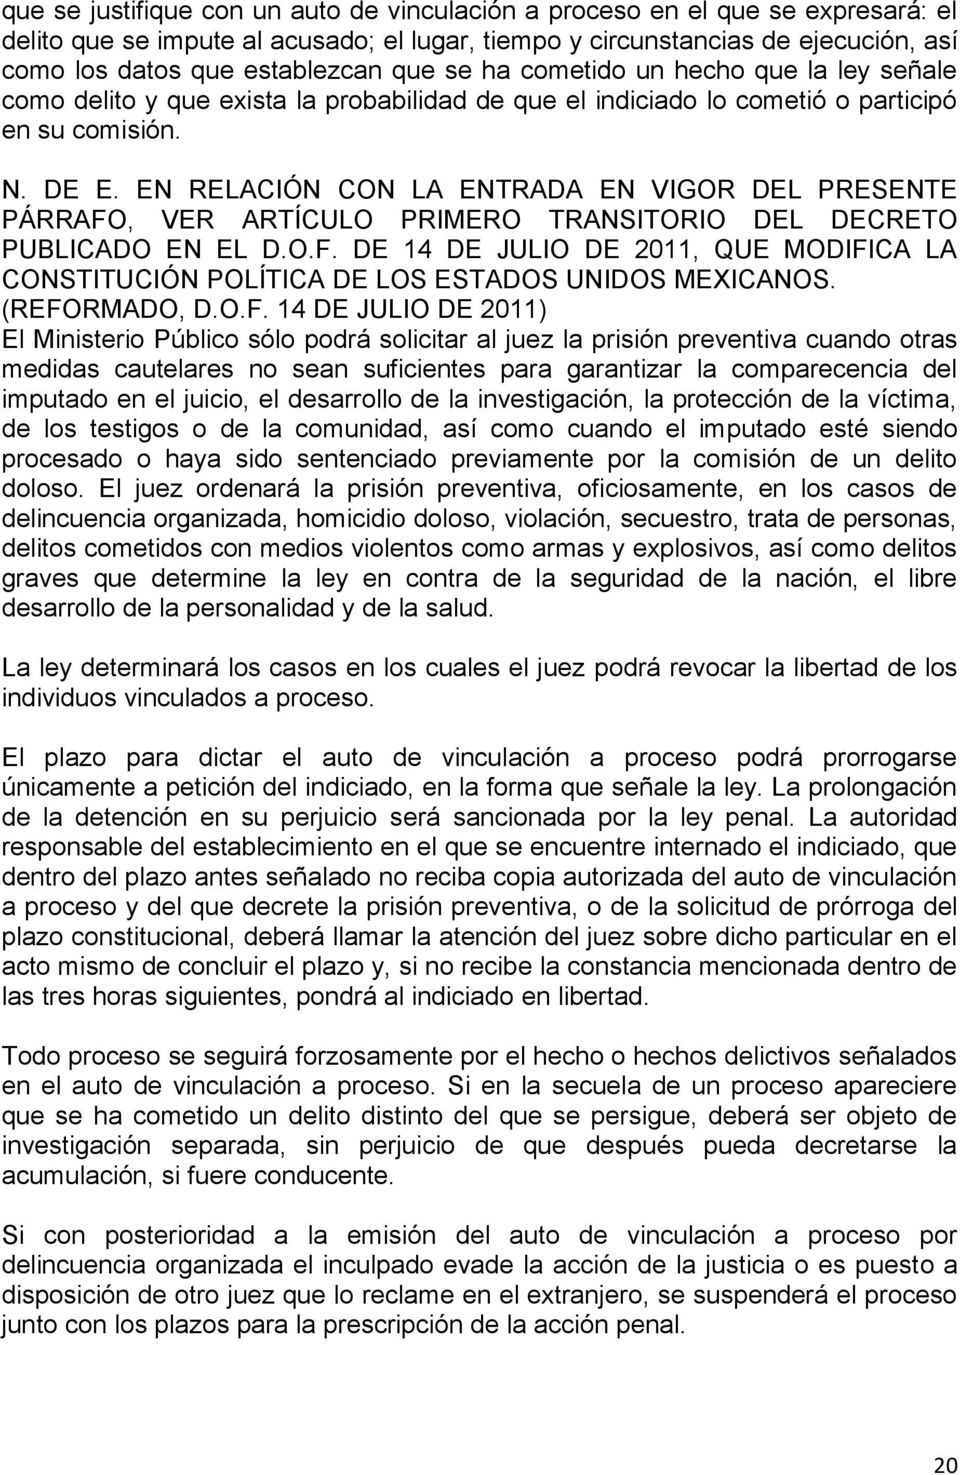 EN RELACIÓN CON LA ENTRADA EN VIGOR DEL PRESENTE PÁRRAFO, VER ARTÍCULO PRIMERO TRANSITORIO DEL DECRETO PUBLICADO EN EL D.O.F. DE 14 DE JULIO DE 2011, QUE MODIFICA LA CONSTITUCIÓN POLÍTICA DE LOS ESTADOS UNIDOS MEXICANOS.